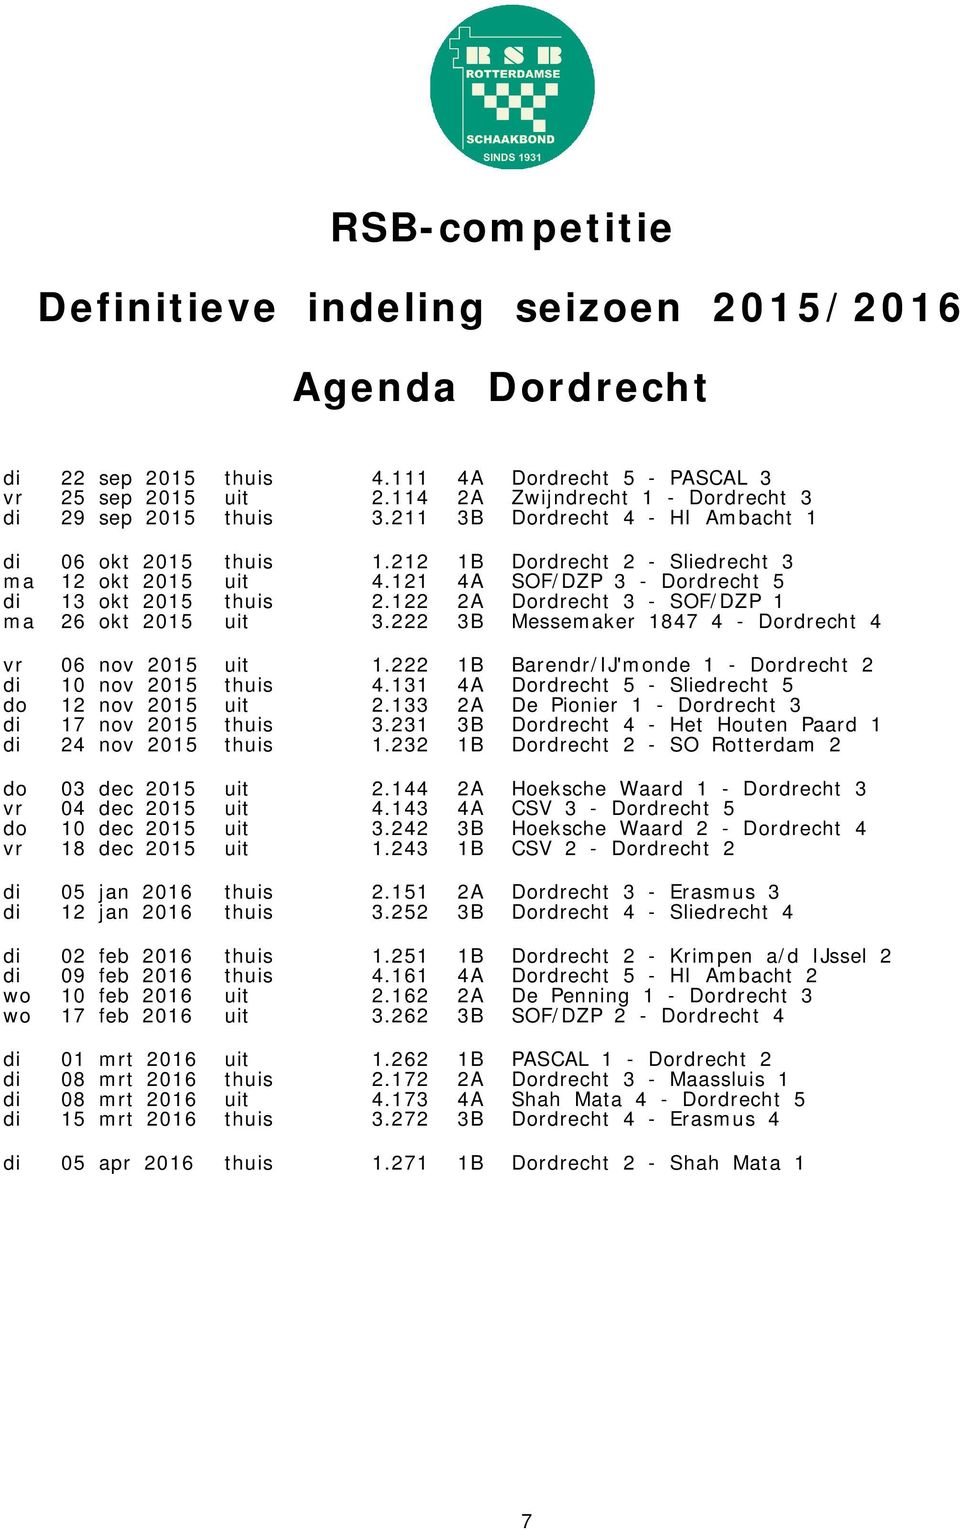 122 2A Dordrecht 3 - SOF/DZP 1 ma 26 okt 2015 uit 3.222 3B Messemaker 1847 4 - Dordrecht 4 vr 06 nov 2015 uit 1.222 1B Barendr/IJ'monde 1 - Dordrecht 2 di 10 nov 2015 thuis 4.